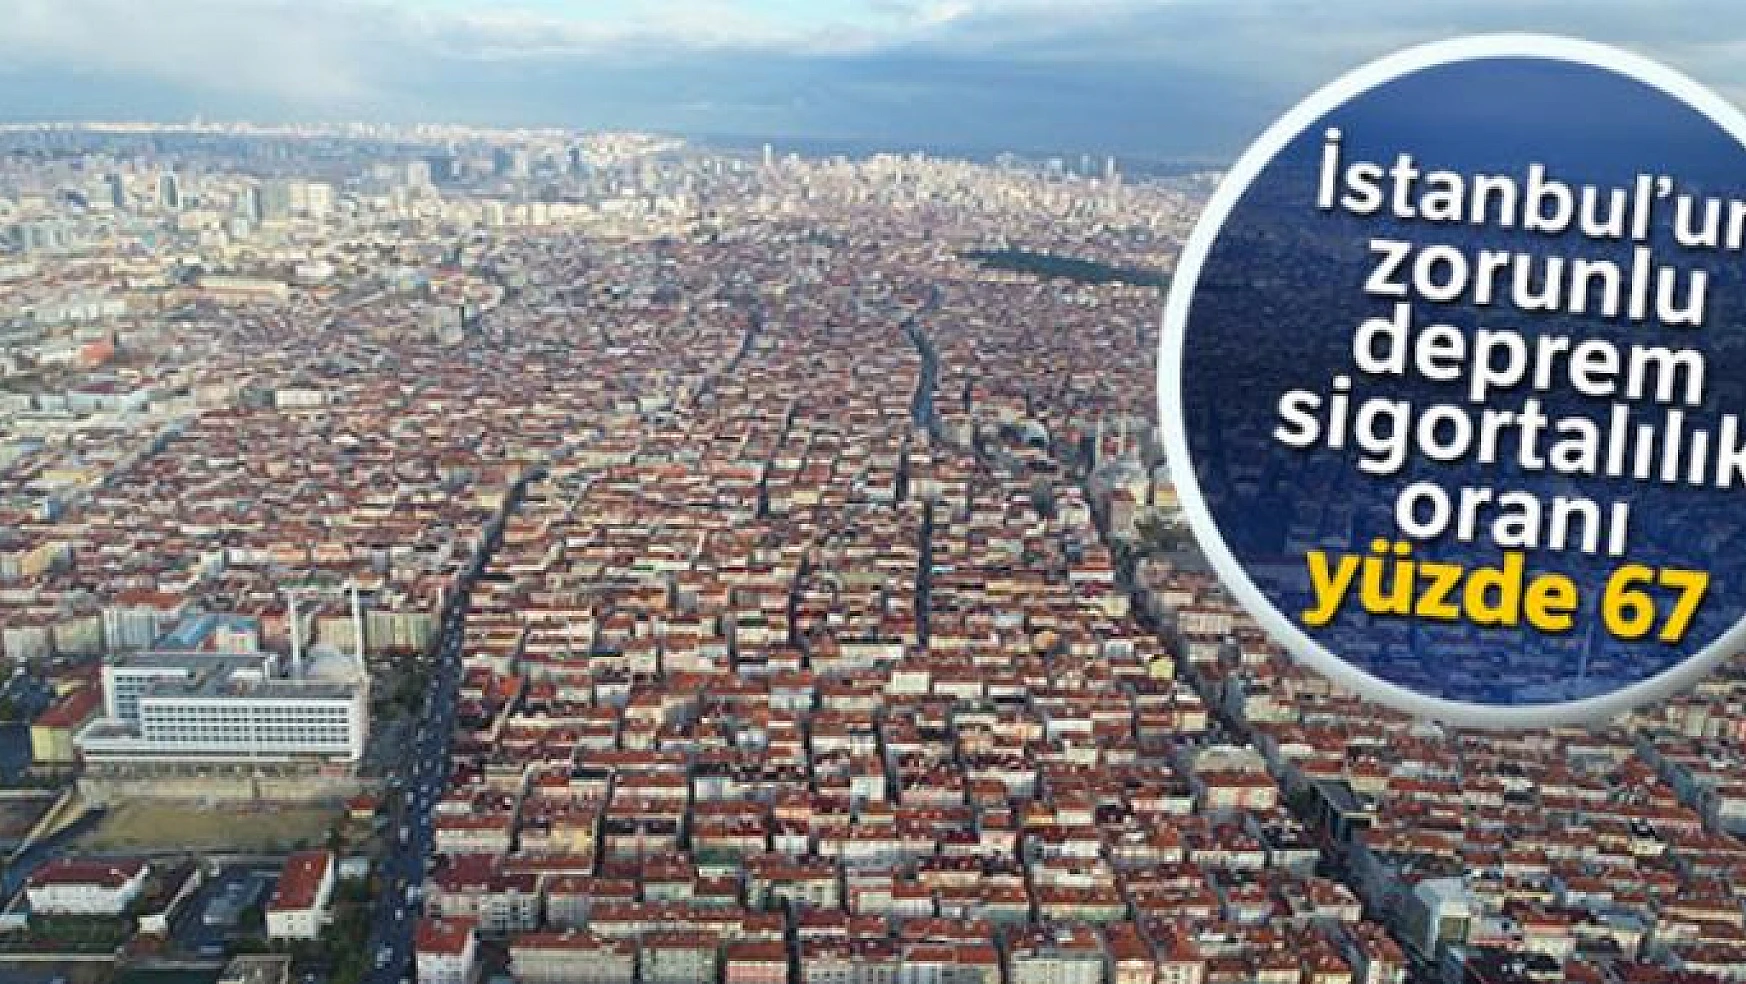 İstanbul'un zorunlu deprem sigortalılık oranı yüzde 67